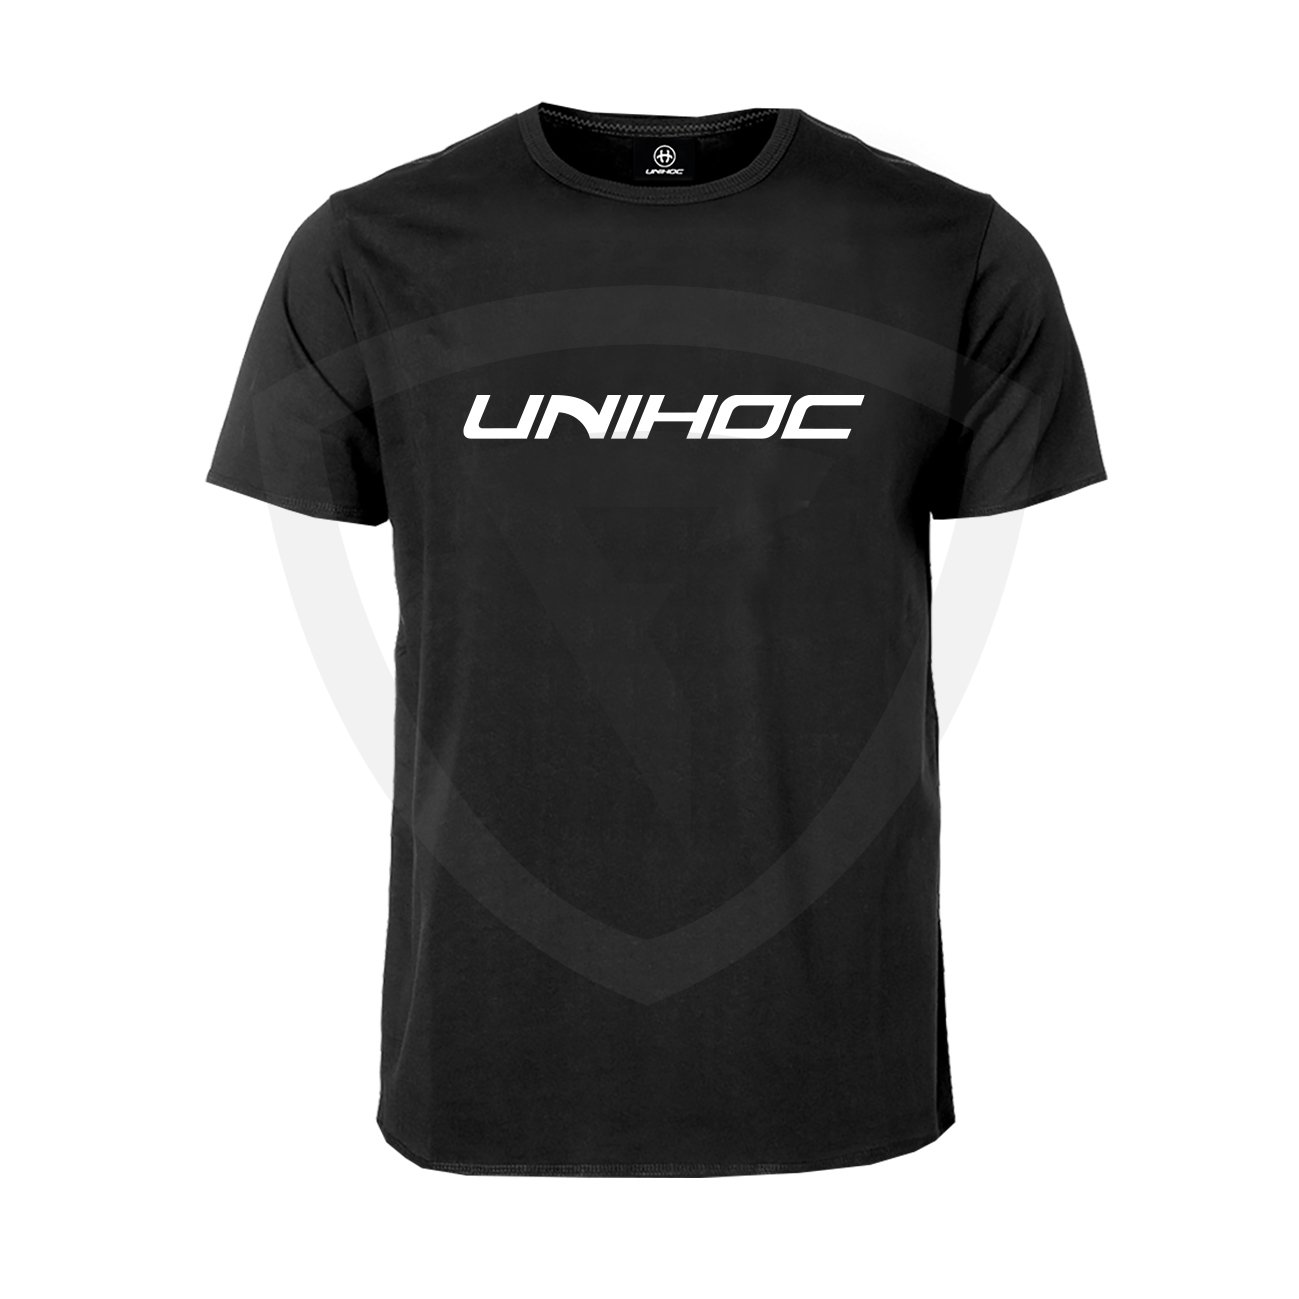 Unihoc T-shirt Classic Black SR XS černá